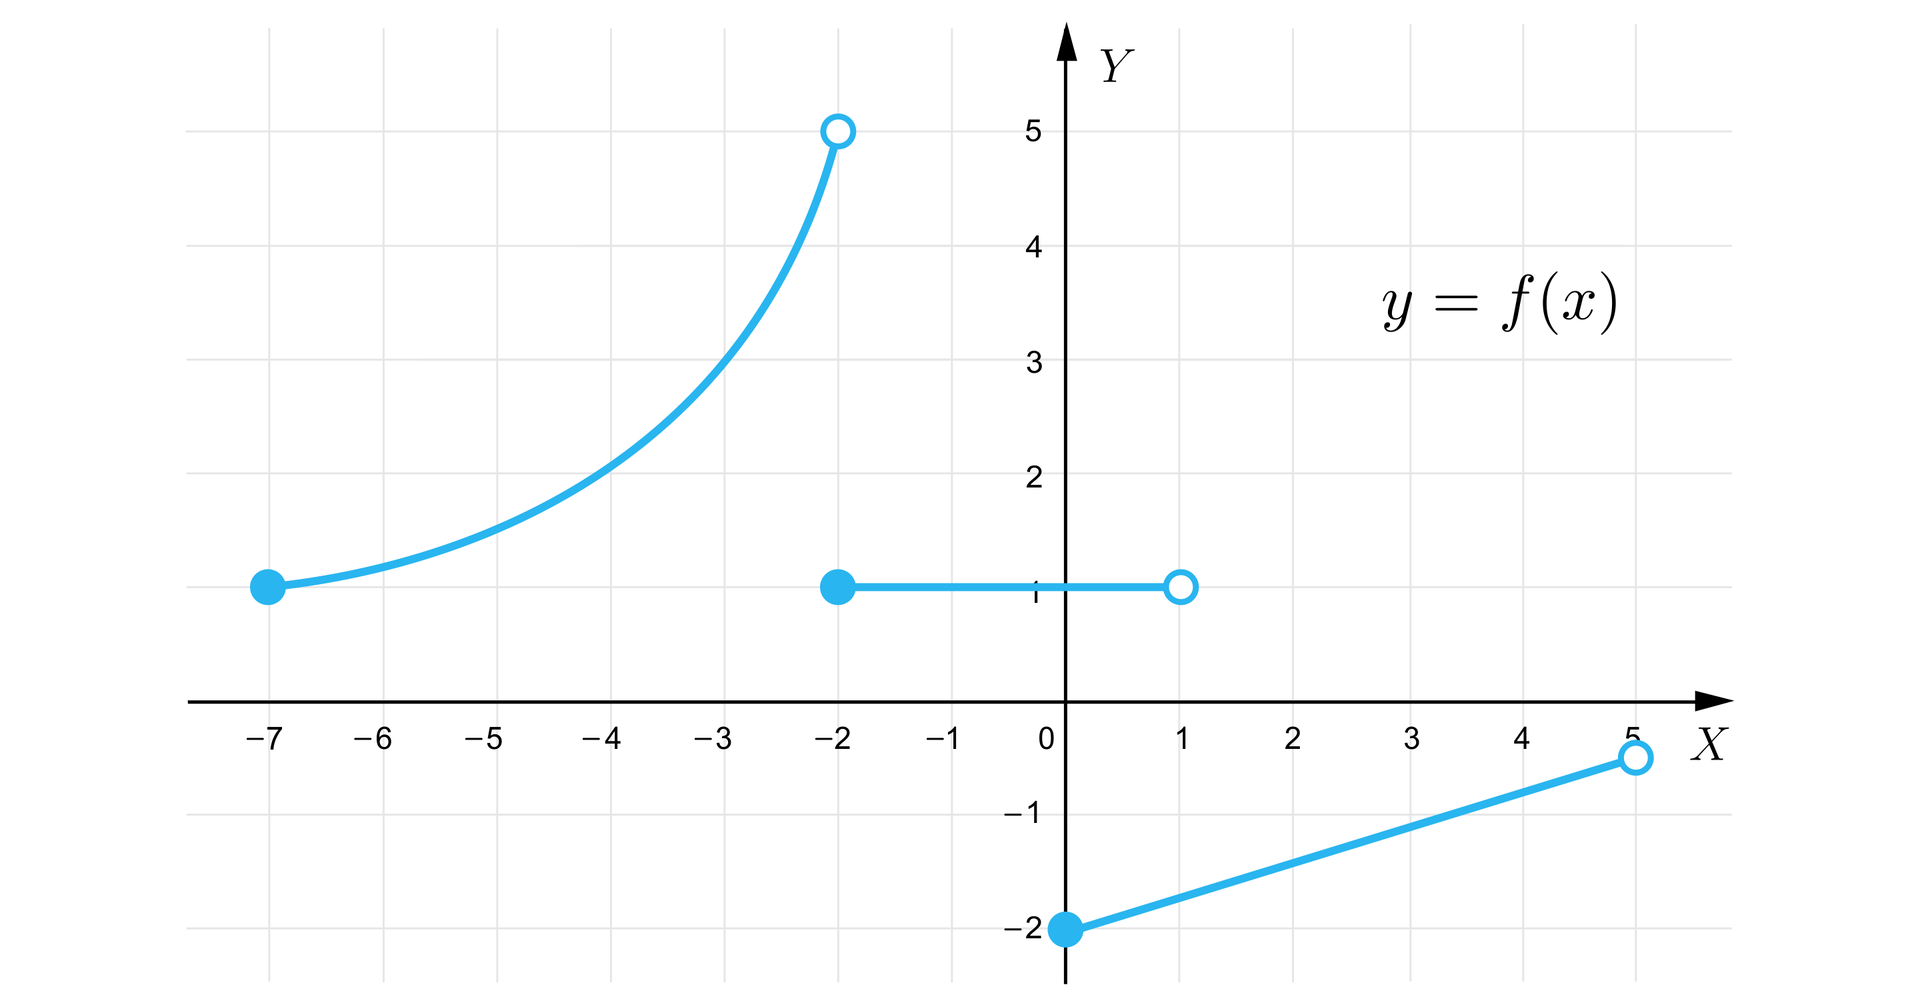 Grafika przedstawia układ współrzędnych z poziomą osią X od minus siedmiu do pięciu oraz z pionową osią Y od minus dwóch do pięciu. Funkcja składa się z trzech części. Pierwsza część to łuk wybrzuszony w stronę początku układu współrzędnych, biegnący od zamalowanego punktu o współrzędnych -7;1 do niezamalowanego punktu o współrzędnych -2;5. Druga część wykresu to poziomy odcinek prawostronnie otwarty o początku w zamalowanym punkcie -2;1 i końcu w niezamalowanym punkcie o współrzędnych 1;1. Trzecia część to ukośny odcinek prawostronnie otwarty o początku w zamalowanym punkcie o współrzędnych 0;-2 i końcu w niezamalowanym punkcie o współrzędnych 5;-12.